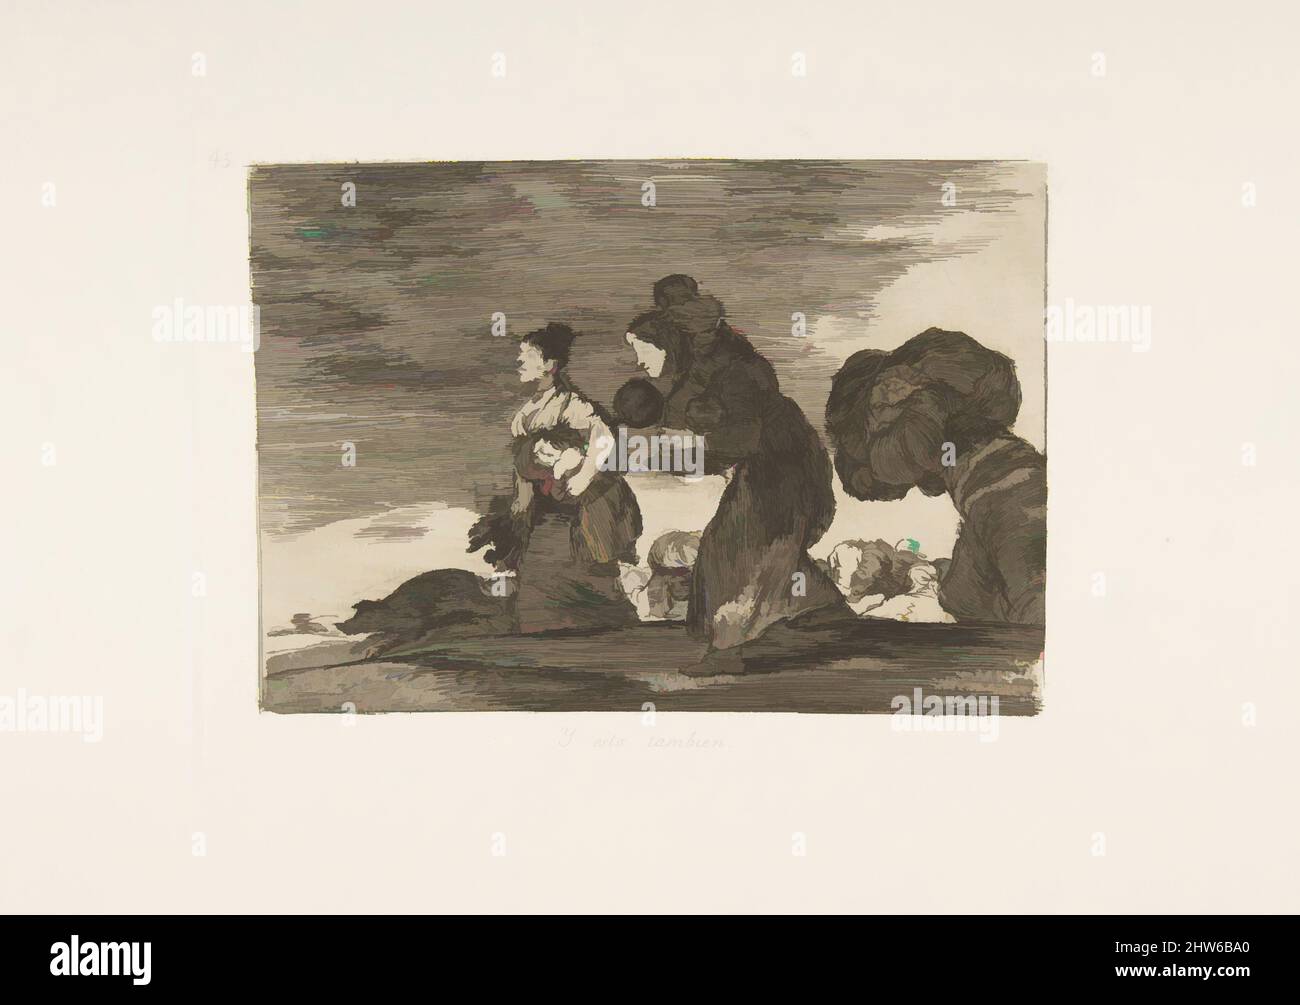 Art inspiré par la planche 45 de 'les désastres de la guerre' (Los Desastres de la Guerra): 'Et ceci aussi.' (Y esto tambienen.), 1810 (publié en 1863), Etching, aquatint ou lavis, Drypoint et burin, Plaque : 6 7/16 × 8 9/16 po (16,3 × 21,8 cm), Prints, Goya (Francisco de Goya y Lucientes) (, oeuvres classiques modernisées par Artotop avec un peu de modernité. Formes, couleur et valeur, impact visuel accrocheur sur l'art émotions par la liberté d'œuvres d'art d'une manière contemporaine. Un message intemporel qui cherche une nouvelle direction créative. Artistes qui se tournent vers le support numérique et créent le NFT Artotop Banque D'Images